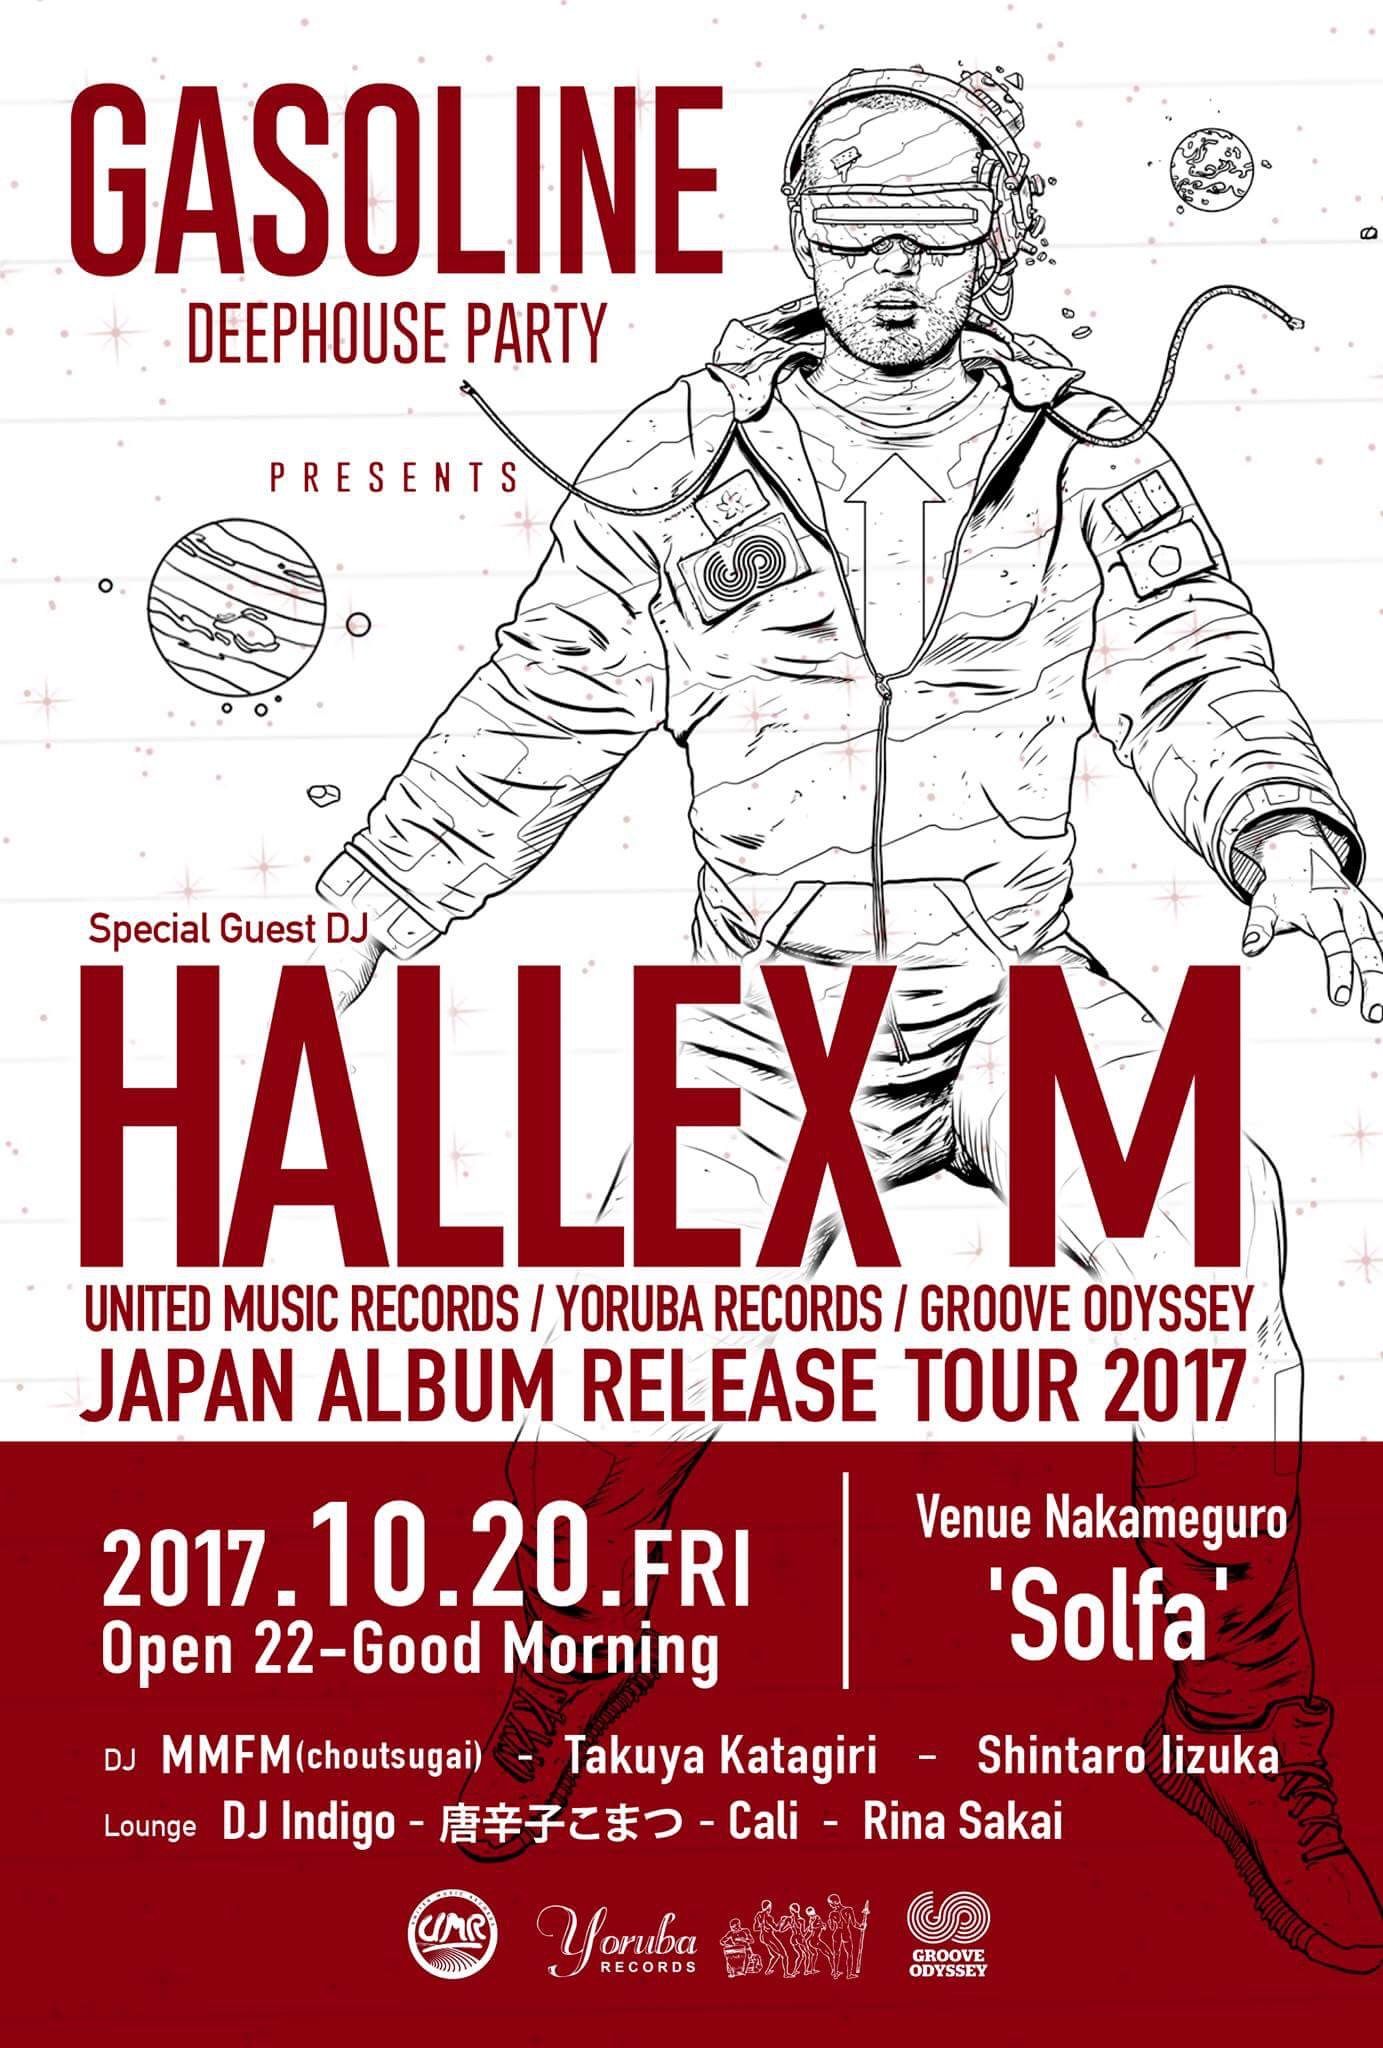 Deep House Party 'GASOLINE' presents 'HALLEX M JAPAN TOUR 2017'